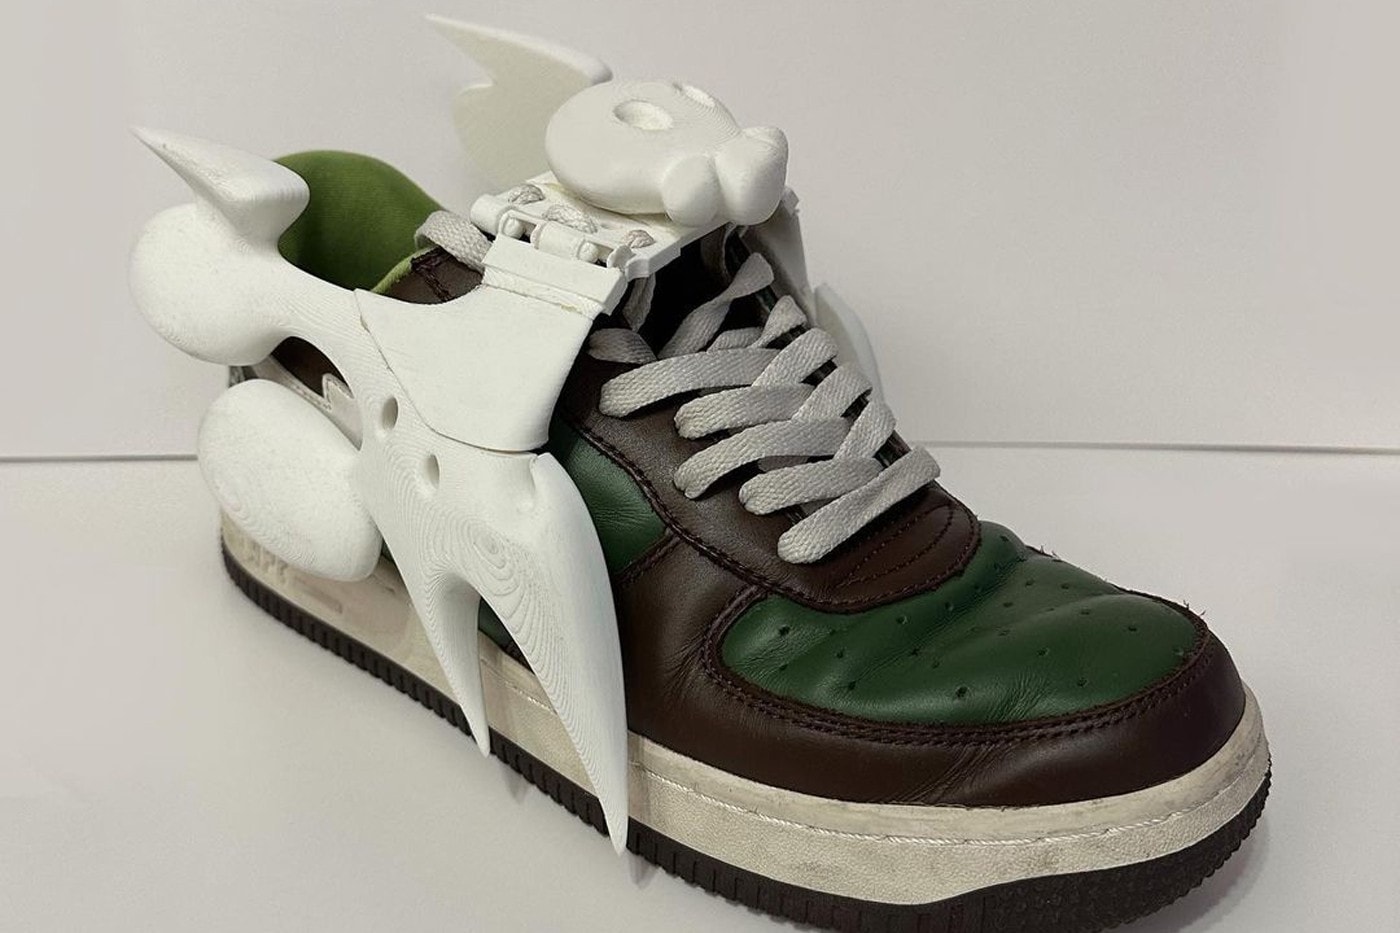 17 歲藝術家 Offgod 釋出「可拆卸式」鞋扣雕塑引發熱議